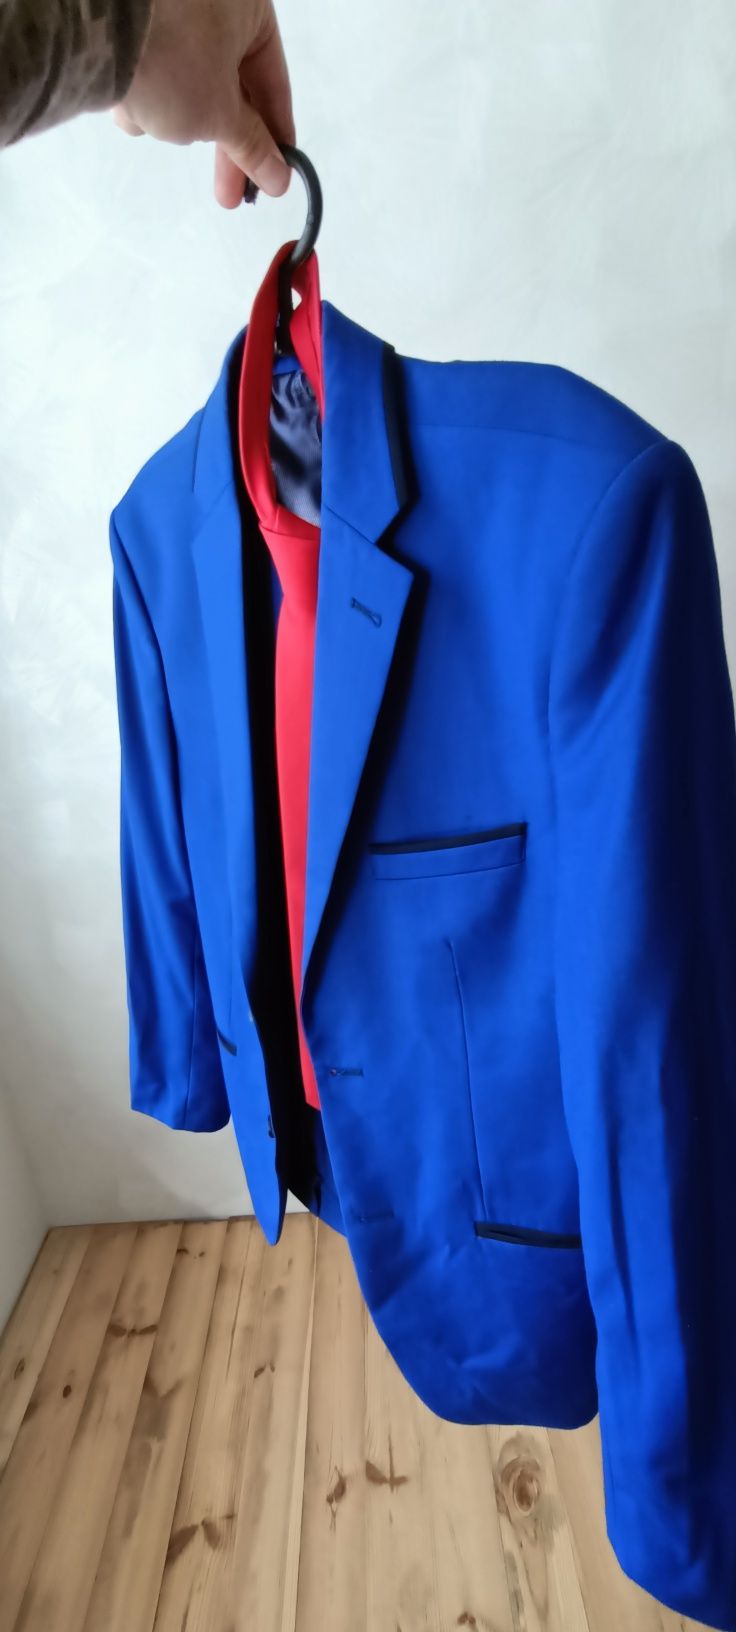 Чоловічий костюм синього кольору. У подарунок червона краватка